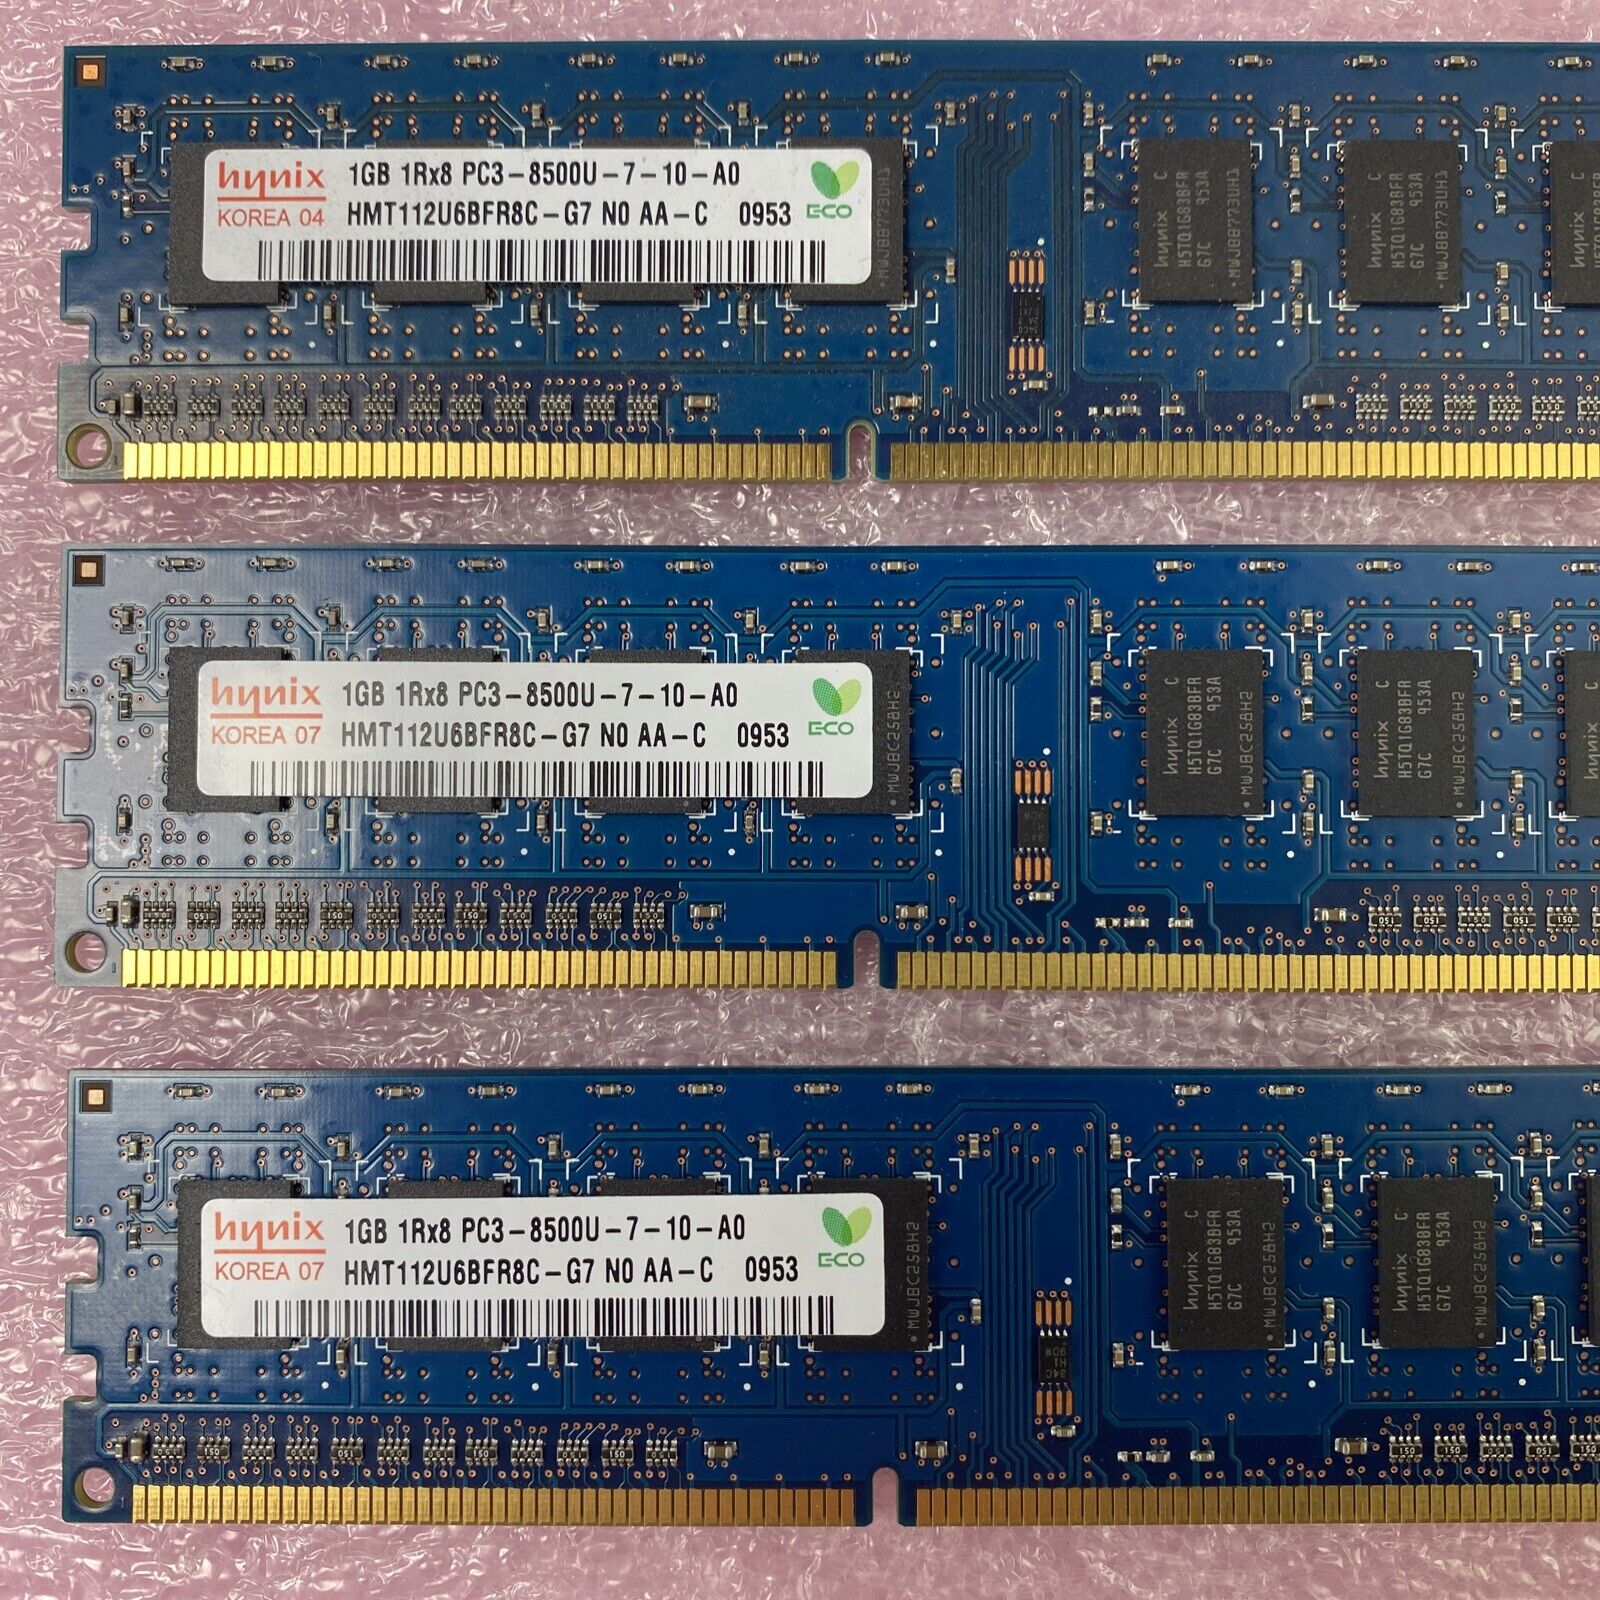 Lot( 3 ) 1GB Hynix HMT112U6BFR8C-G7 1Rx8 PC3-8500U DDR3 non-ECC Desktop RAM